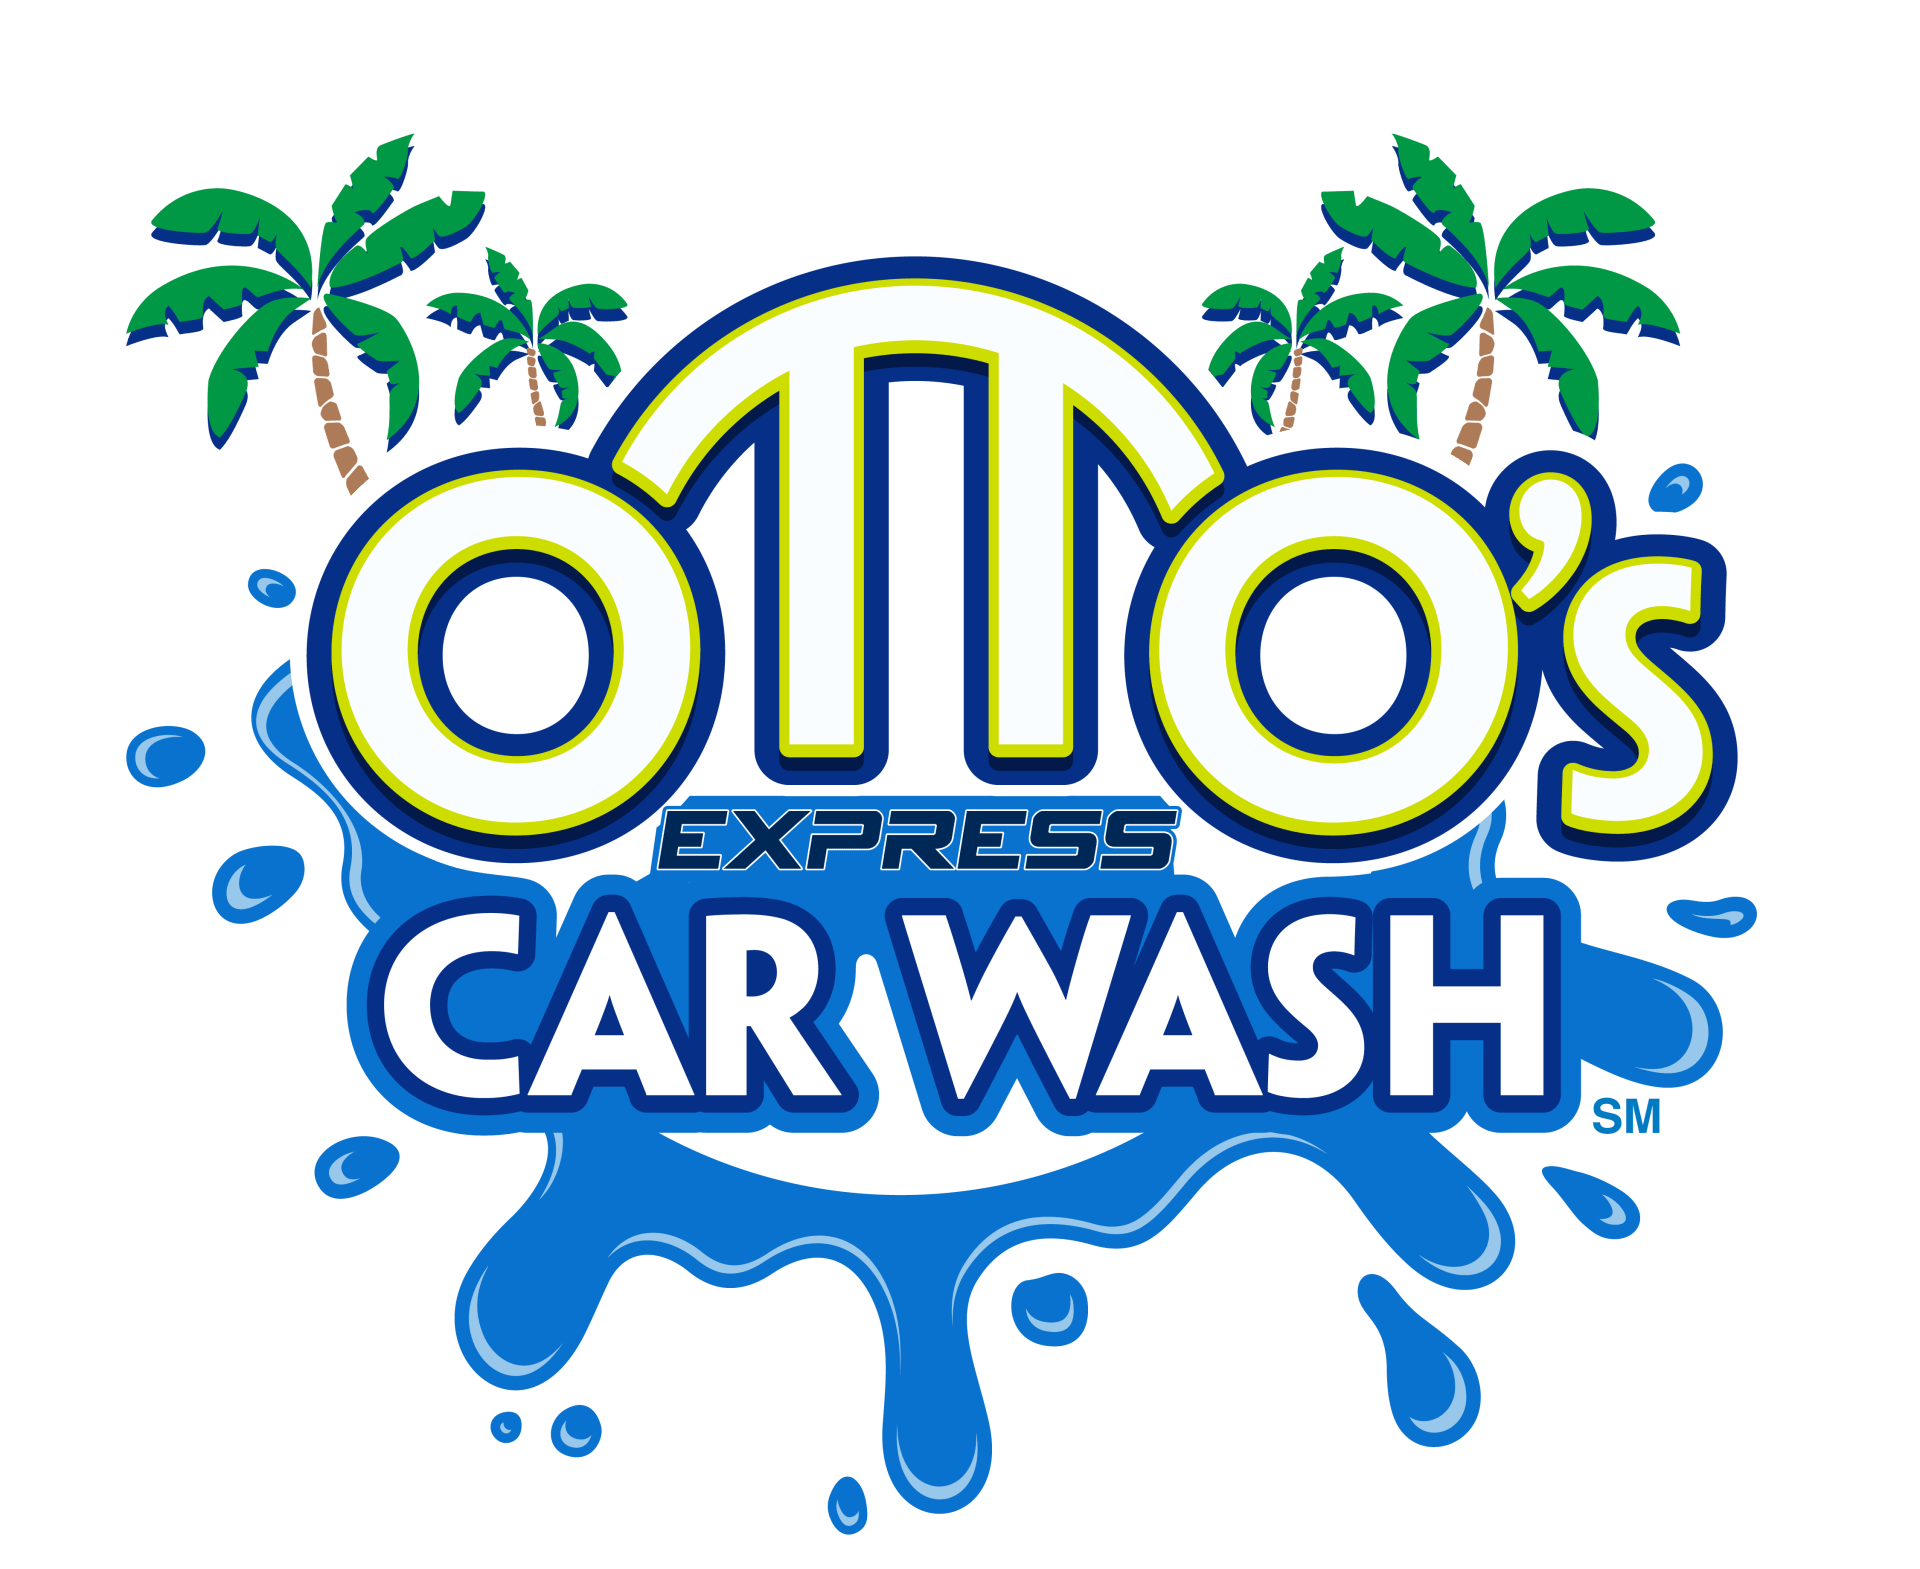 ottos express car wash in florida logo